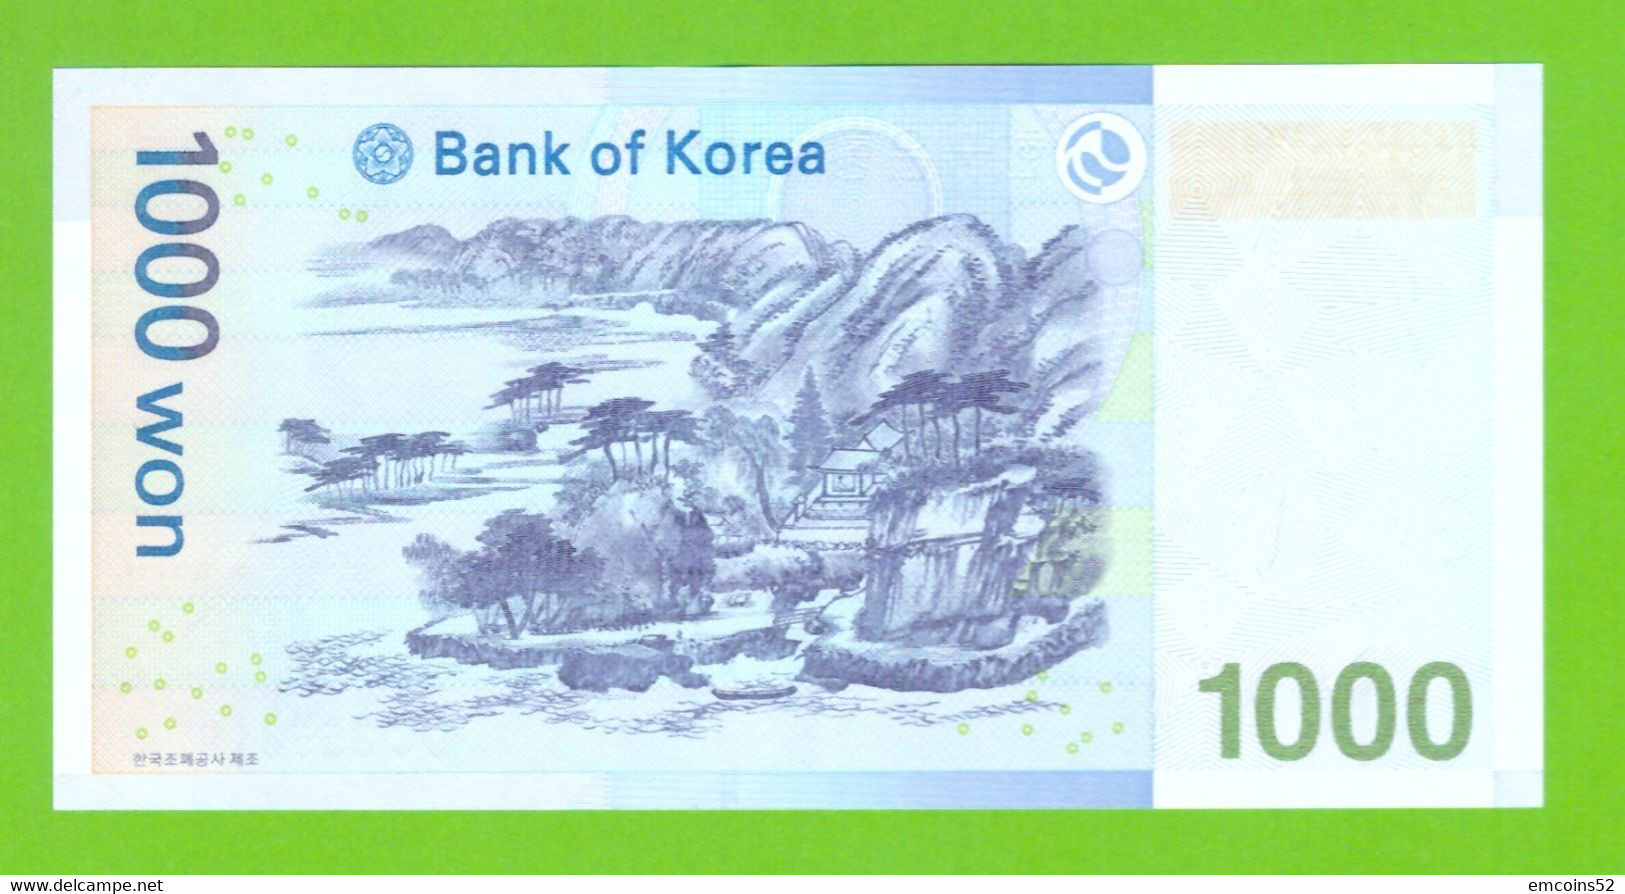 KOREA SOUTH 1000 WON 2007  P-54 UNC - Corea Del Sur